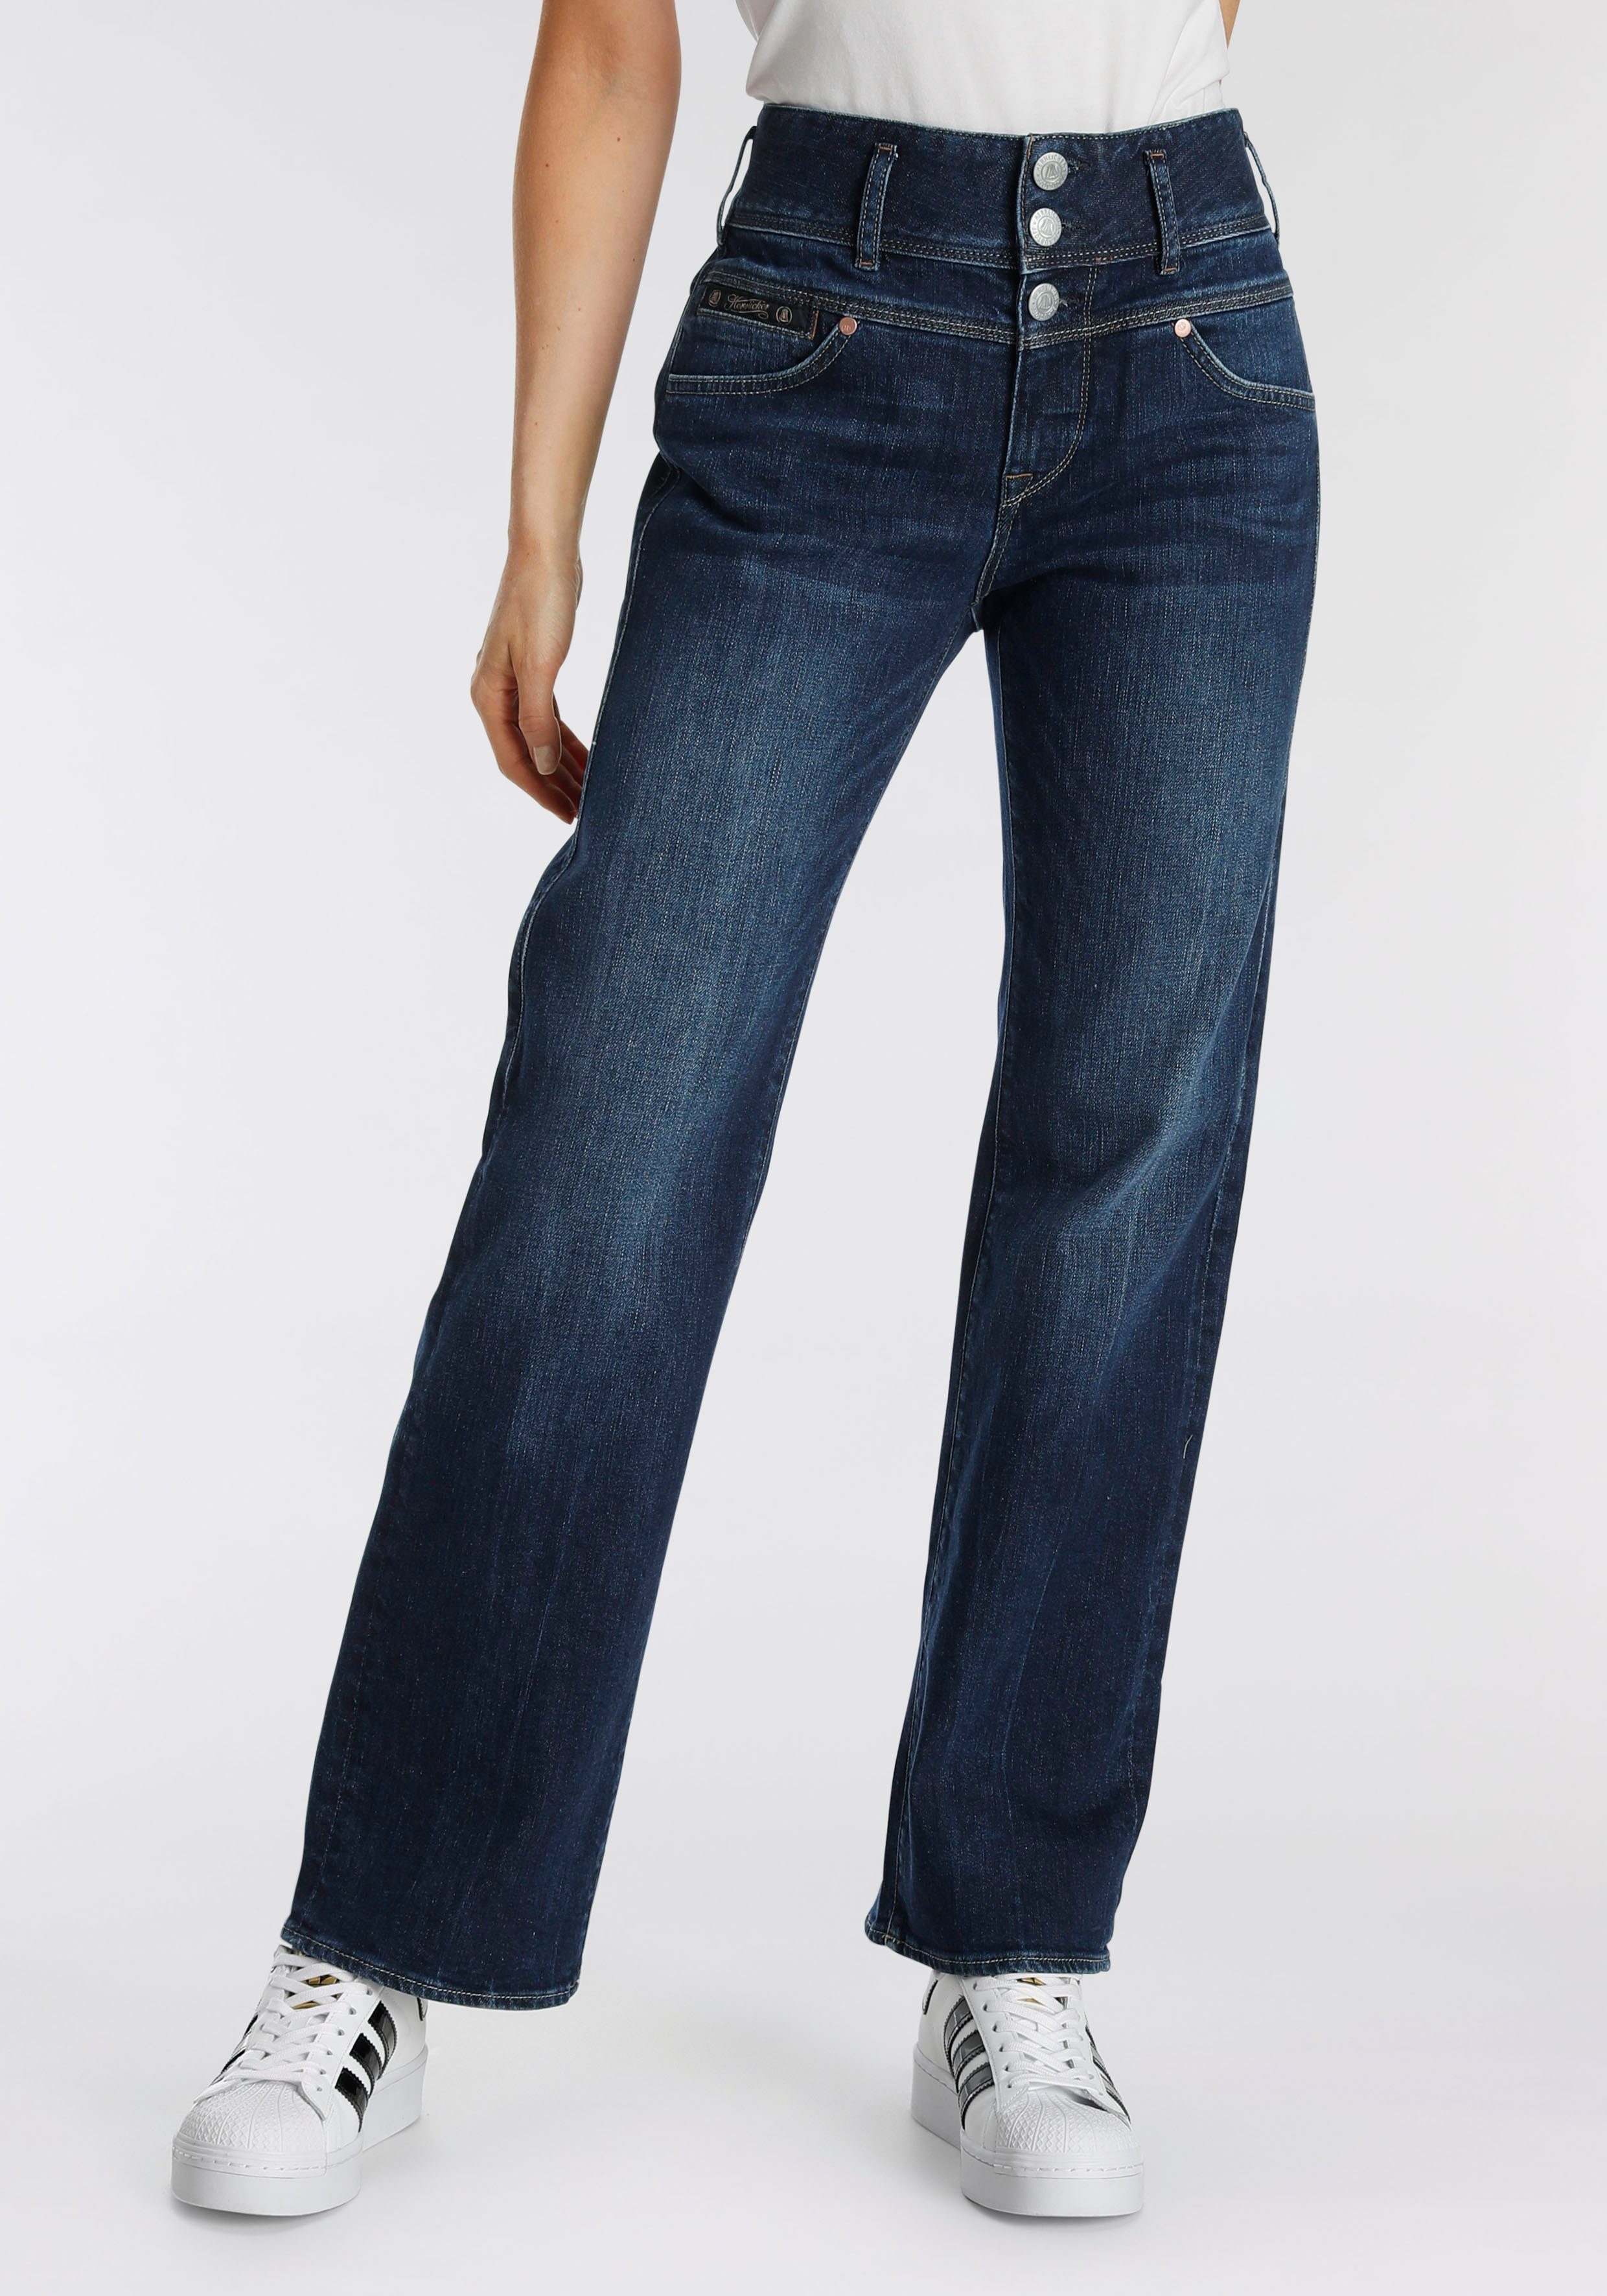 Herrlicher Straight-Jeans RAYA mit seitlichen Keileinsätzen für eine  streckende Wirkung, Gerade Jeans \